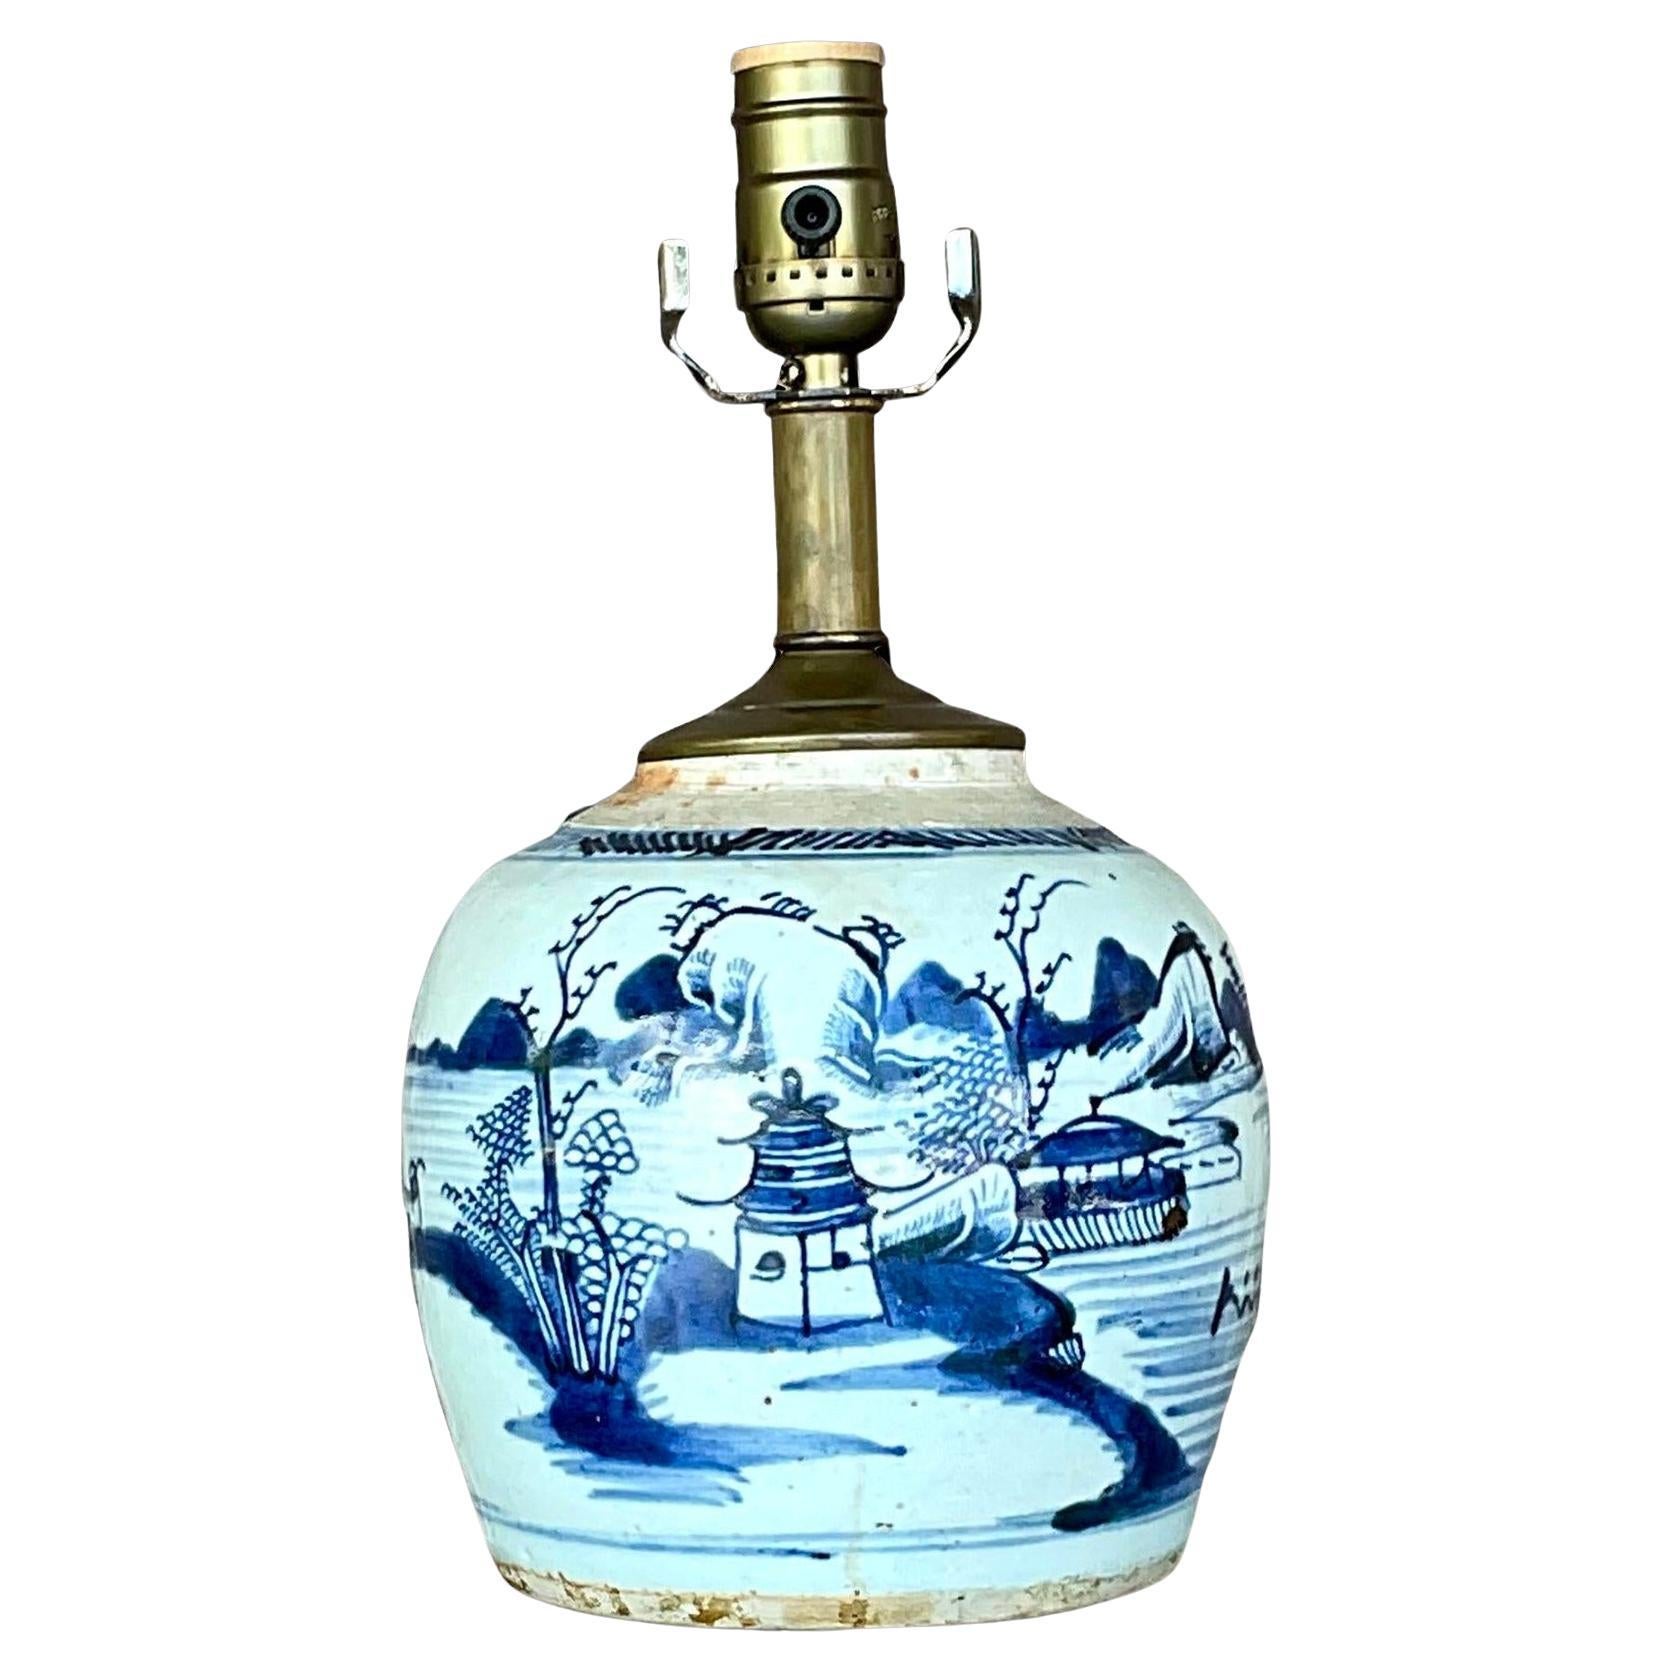 Asiatische Vintage- Ingwerglas-Lampe aus dem 18. Jahrhundert